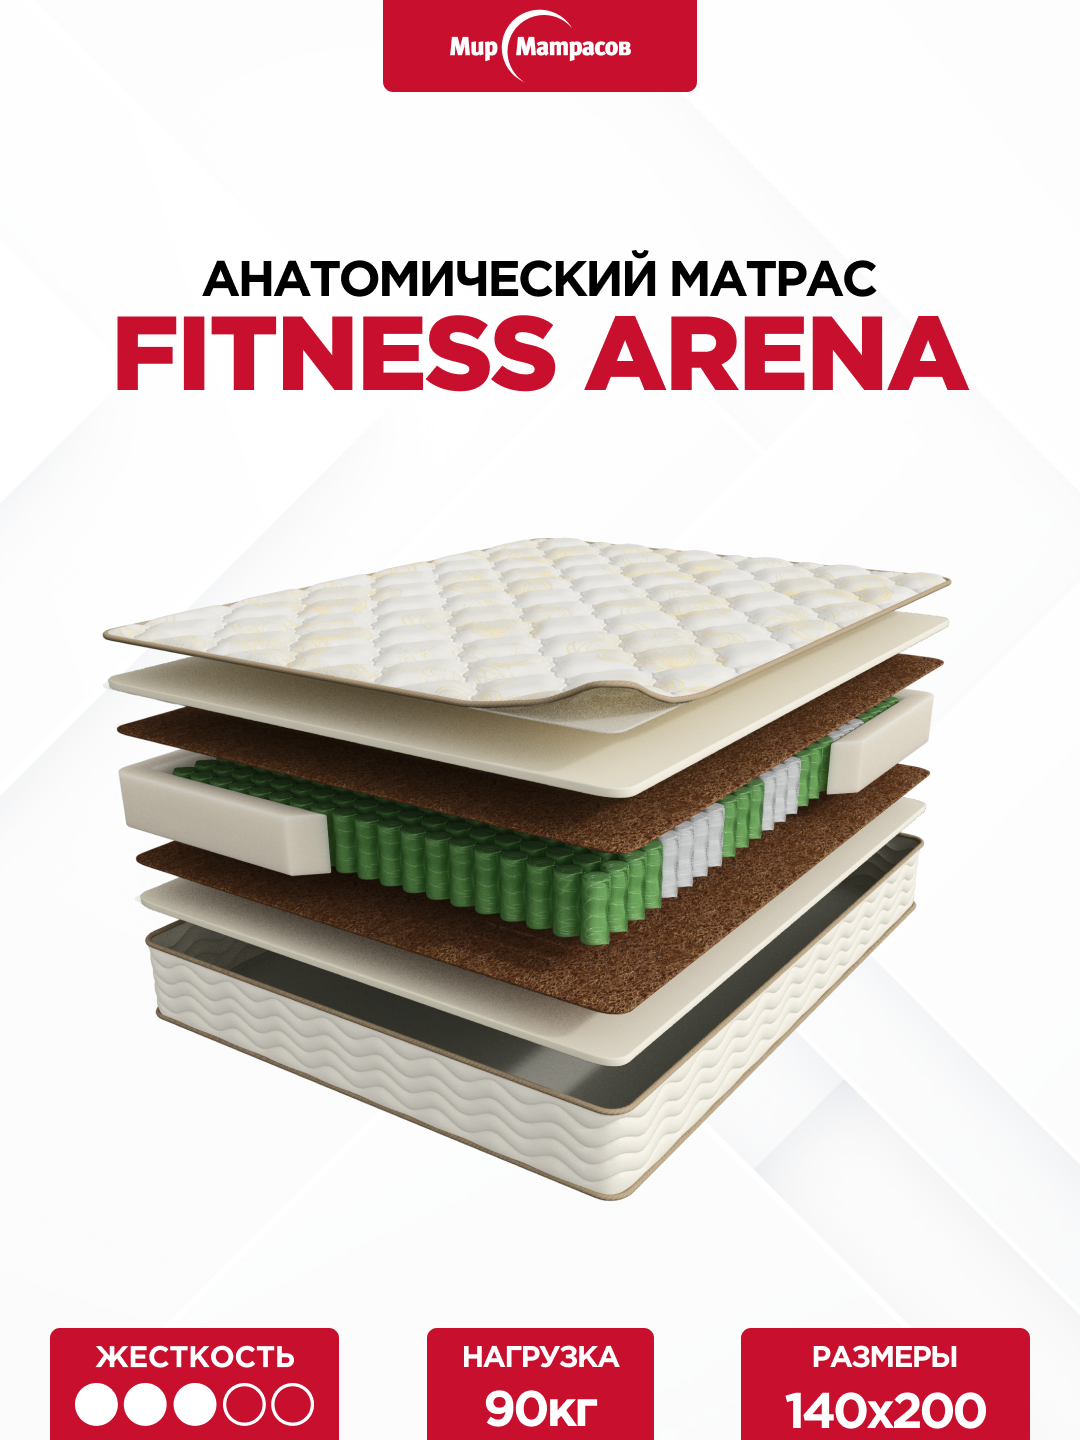 Матрас Fitness Arena, 140x200 см, пружинный